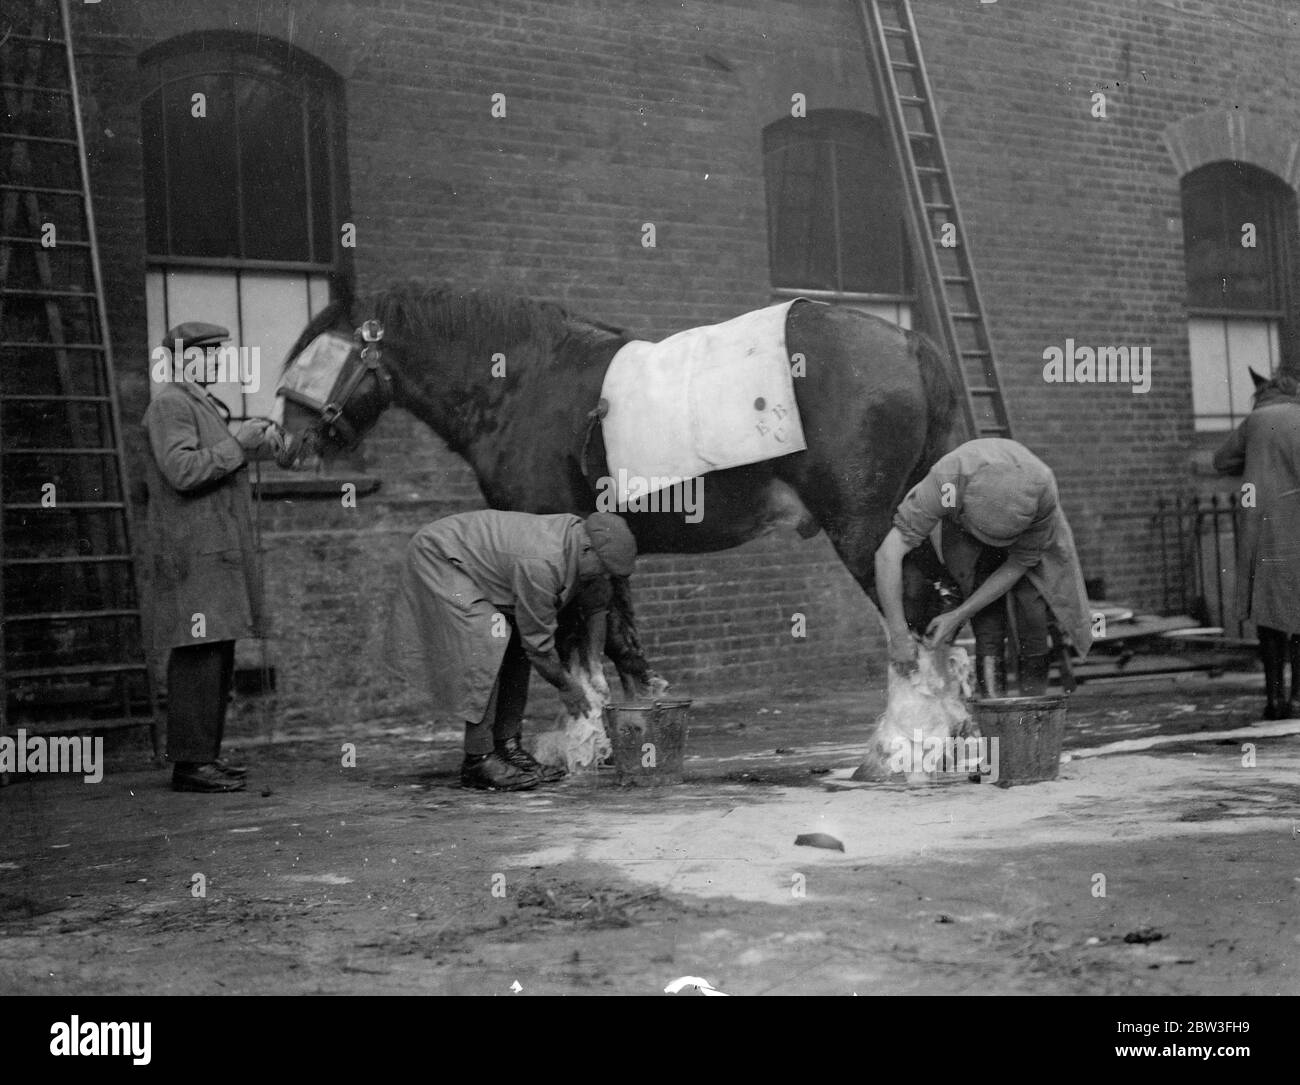 Llegadas para el Show de Shire Horse en el Royal Agricultural Hall, Islington, Londres. Lavar uno de los caballos a su llegada para el espectáculo. 29 de enero de 1935 Foto de stock